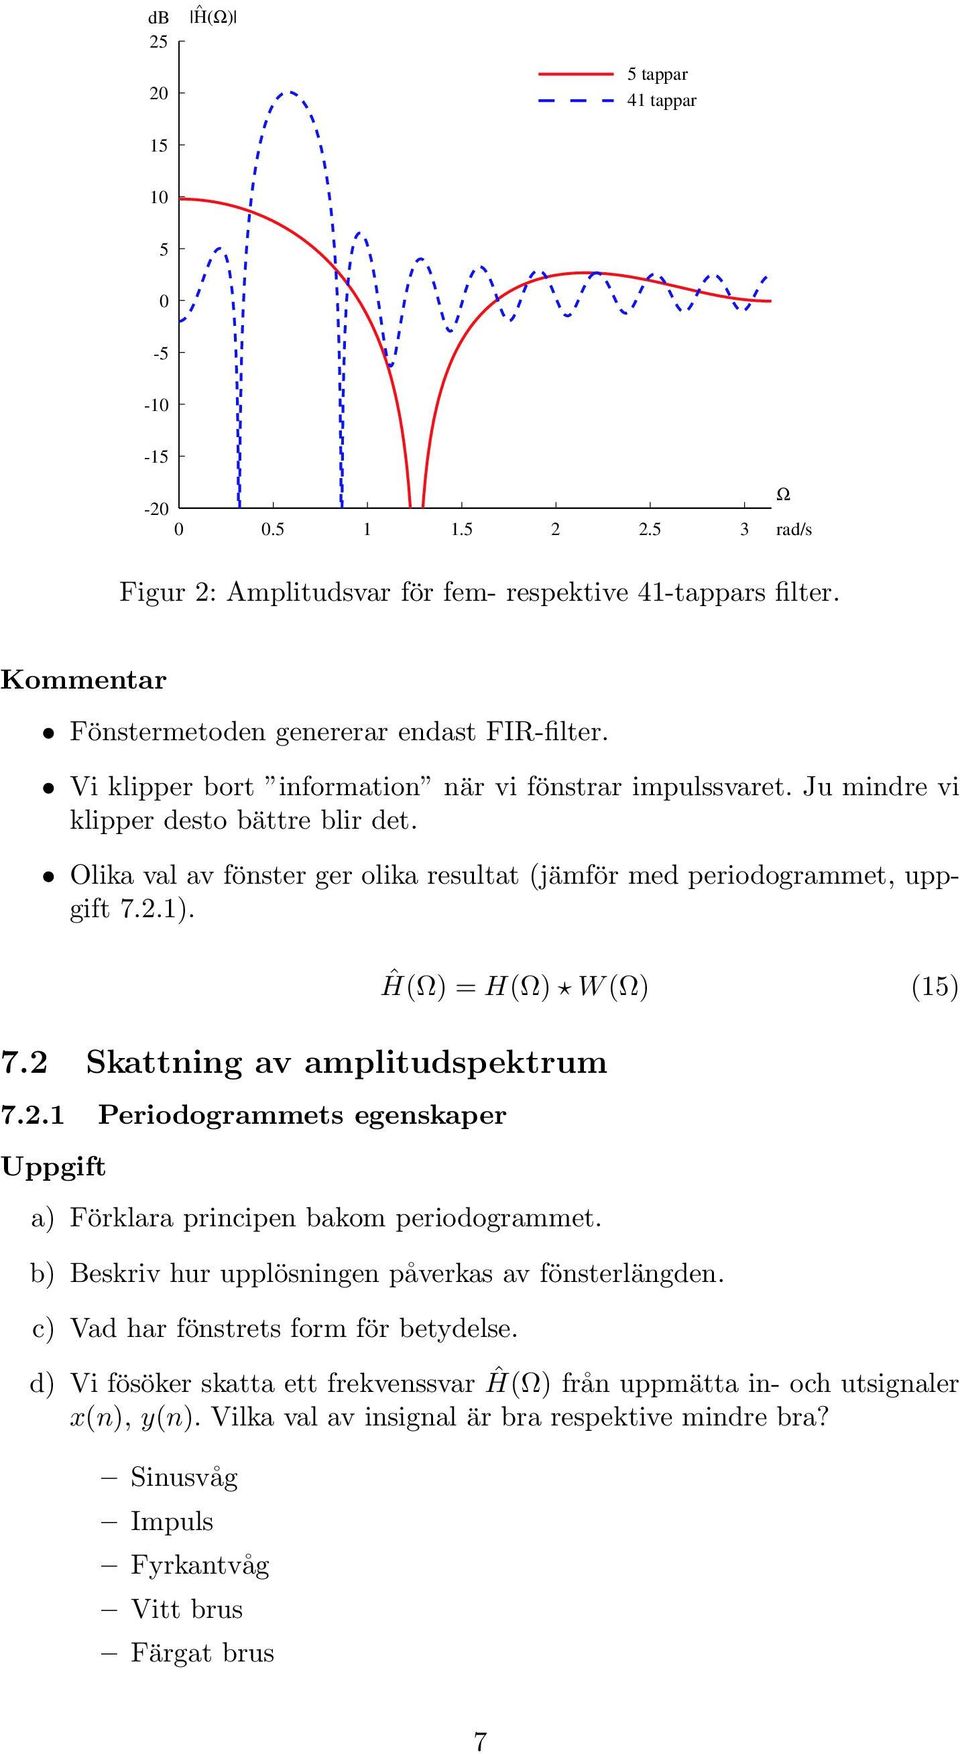 Ĥ(Ω) = H(Ω) W (Ω) (5) 7.2 Skattig av amplitudspektrum 7.2. Periodogrammets egeskaper Uppgift a) Förklara pricipe bakom periodogrammet. b) Beskriv hur upplösige påverkas av fösterlägde.